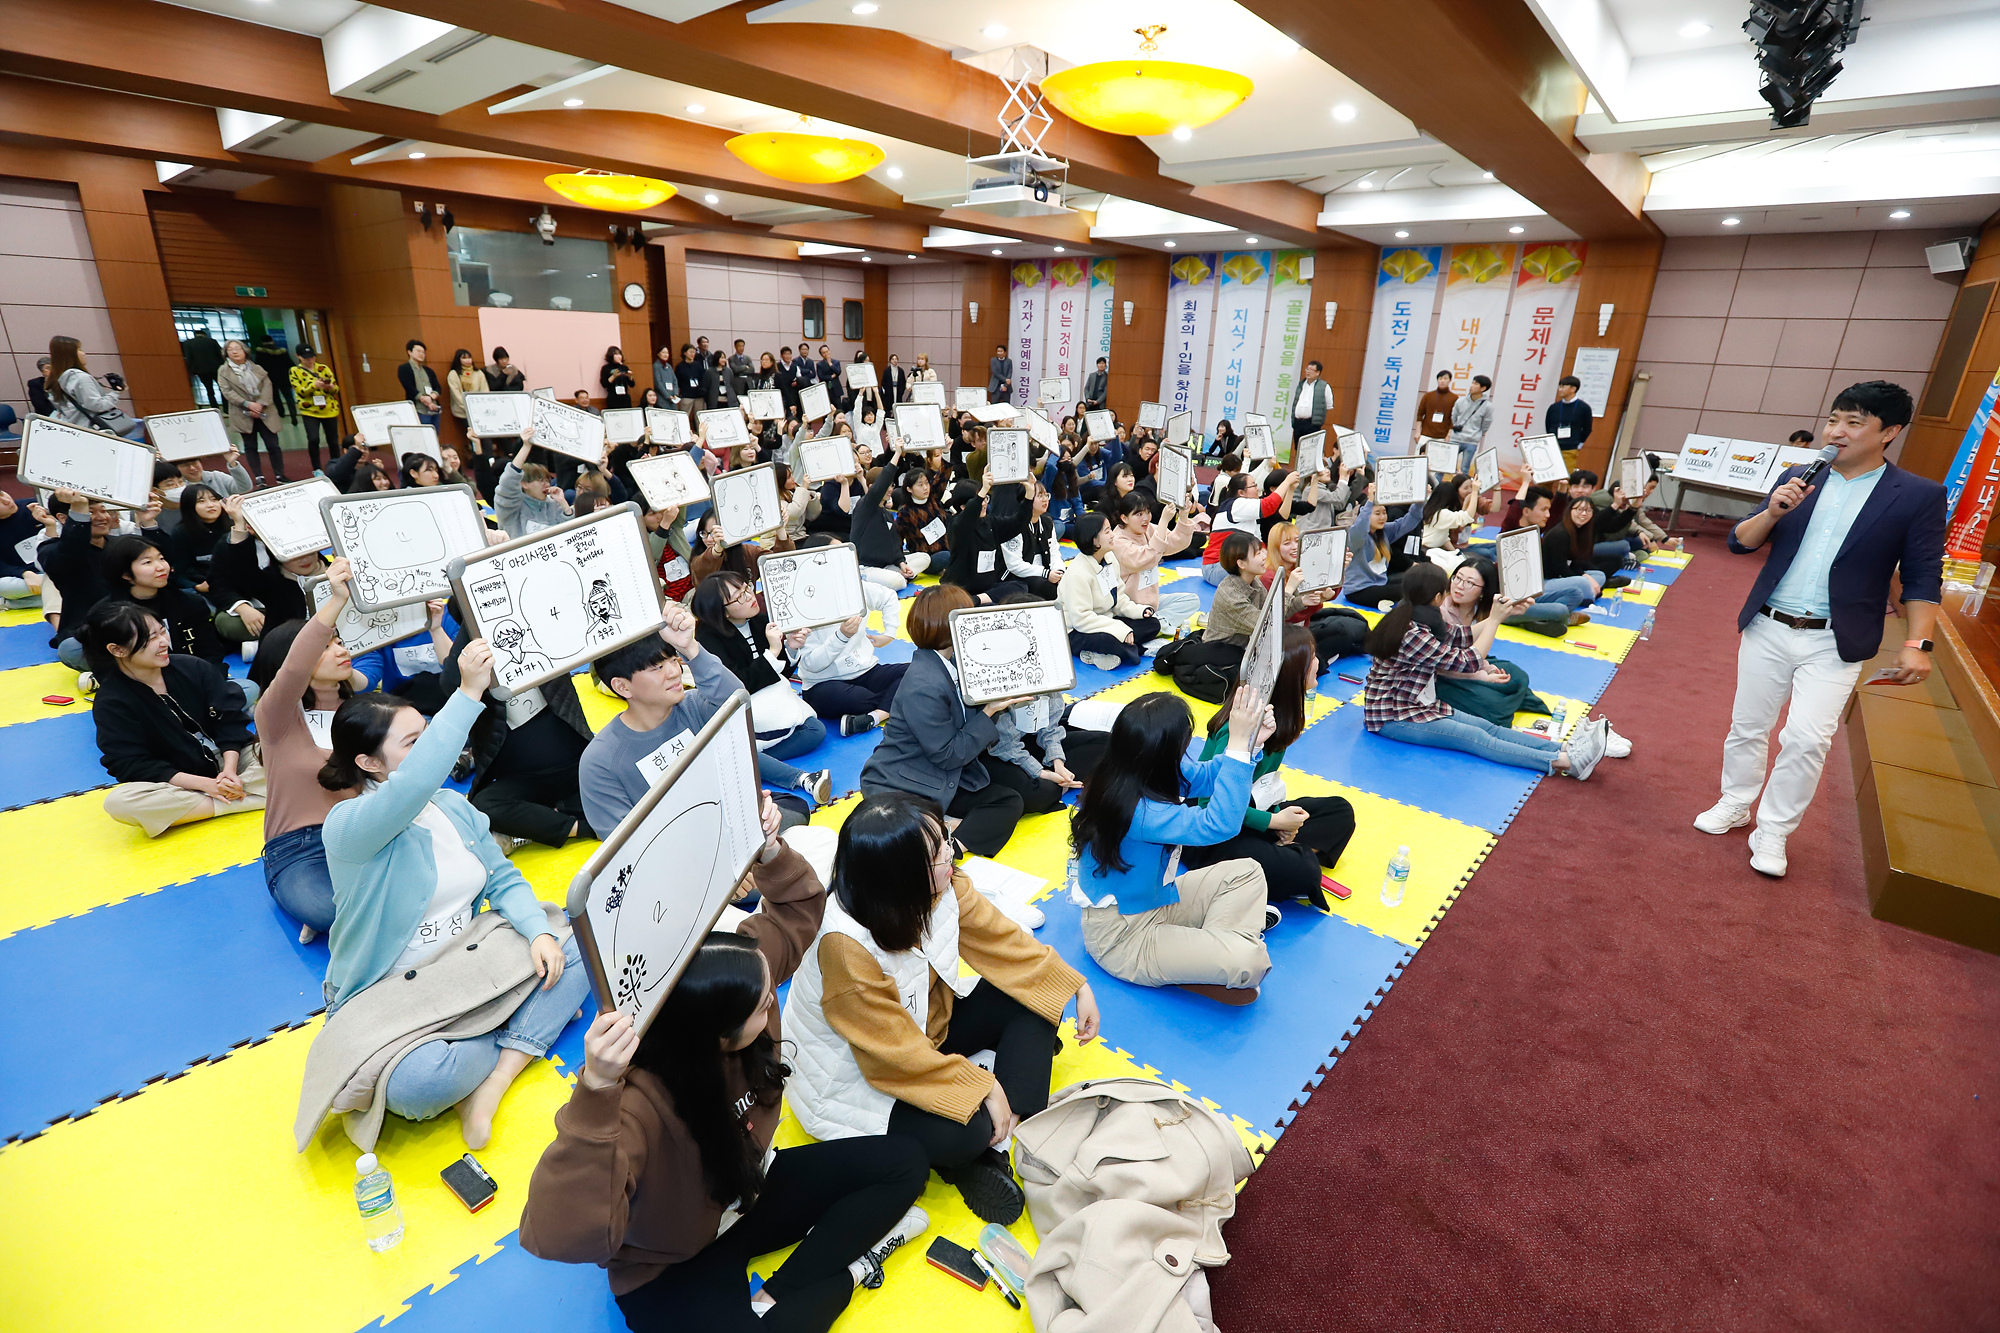 사진설명 독서골든벨에 참여하고 있는 학생들의 모습